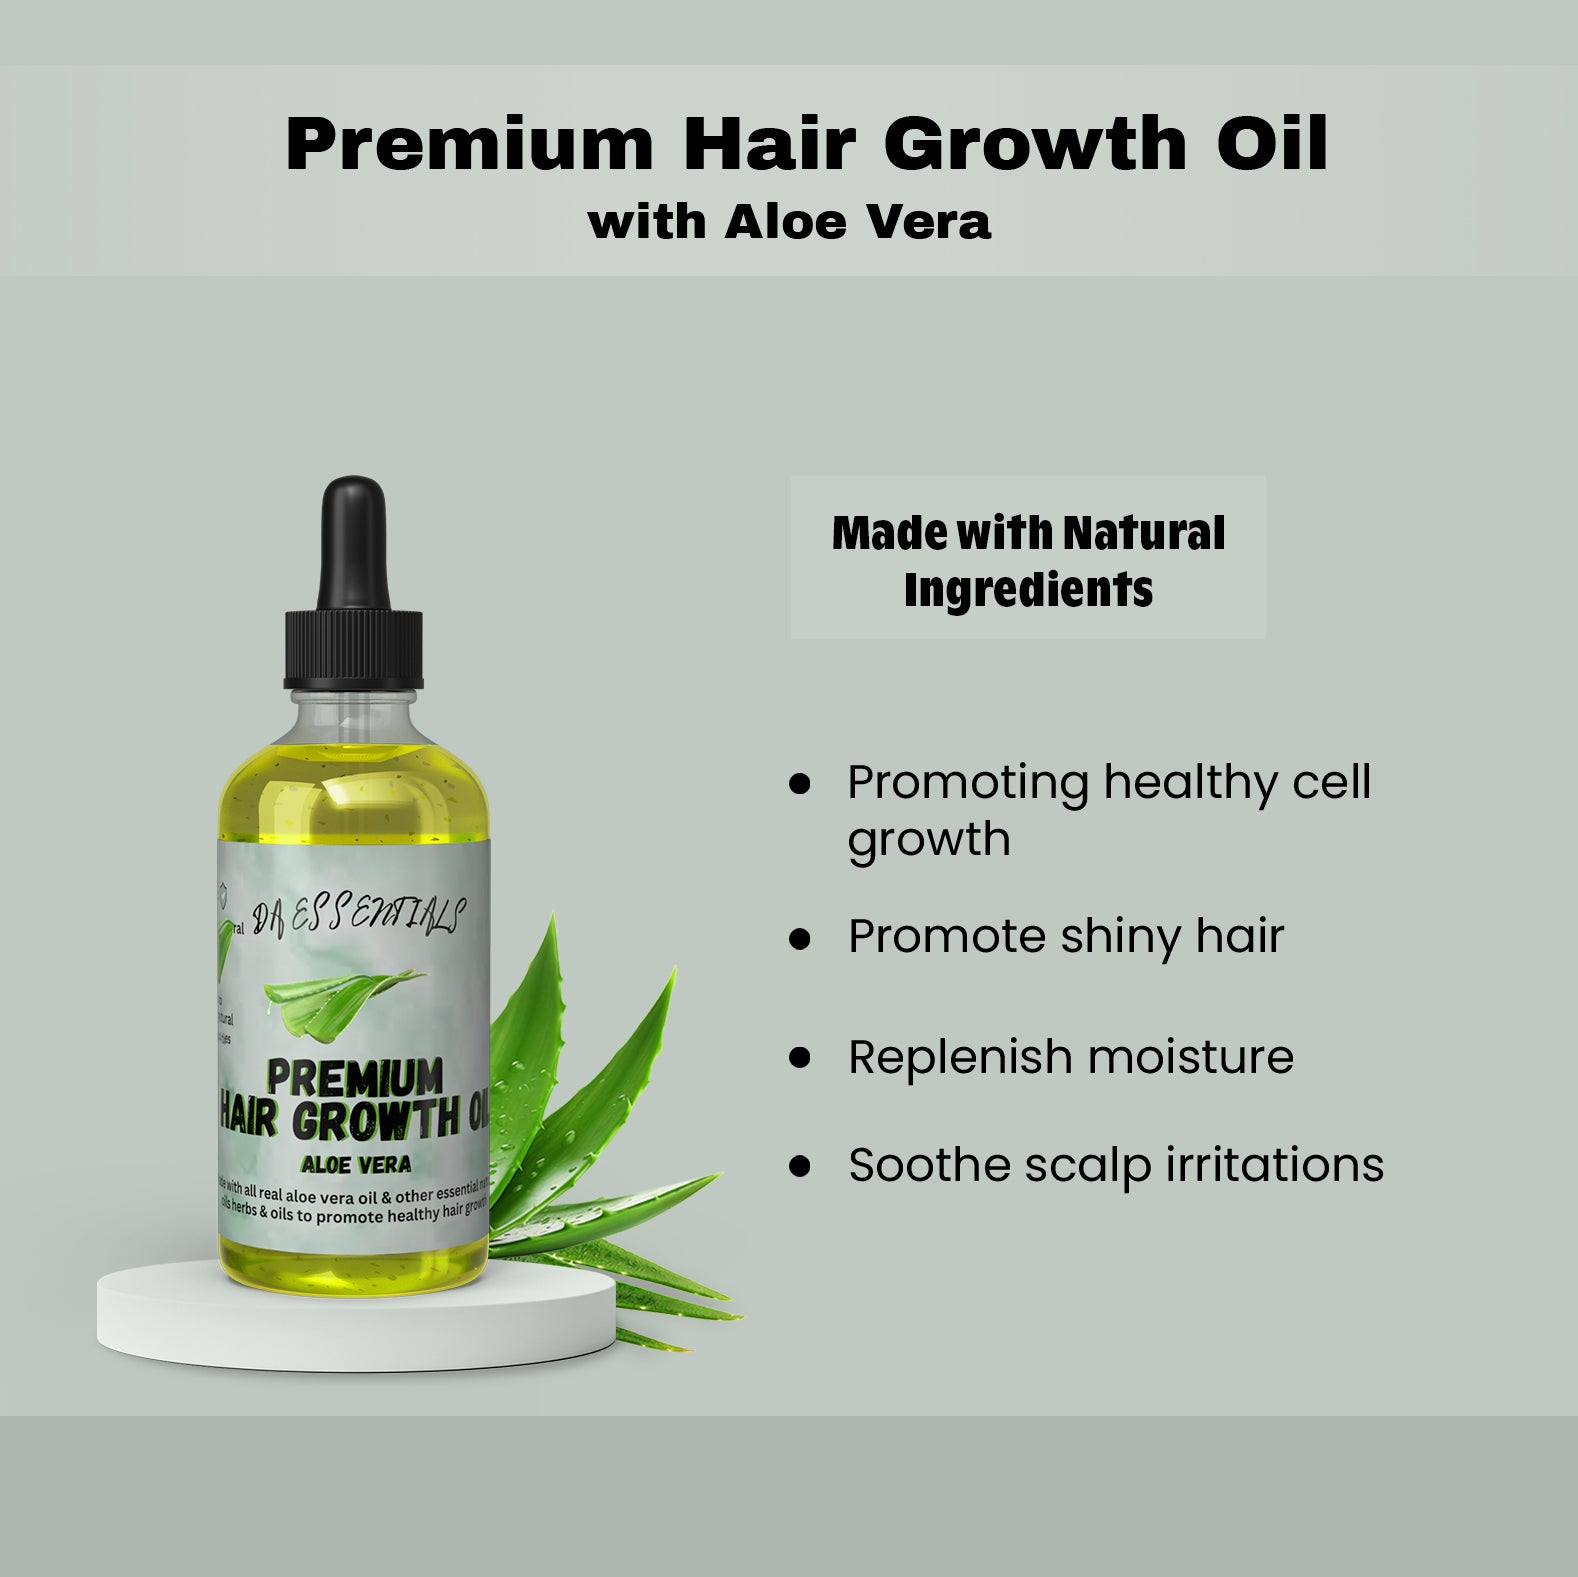 Aloe Vera Hair Growth Oil